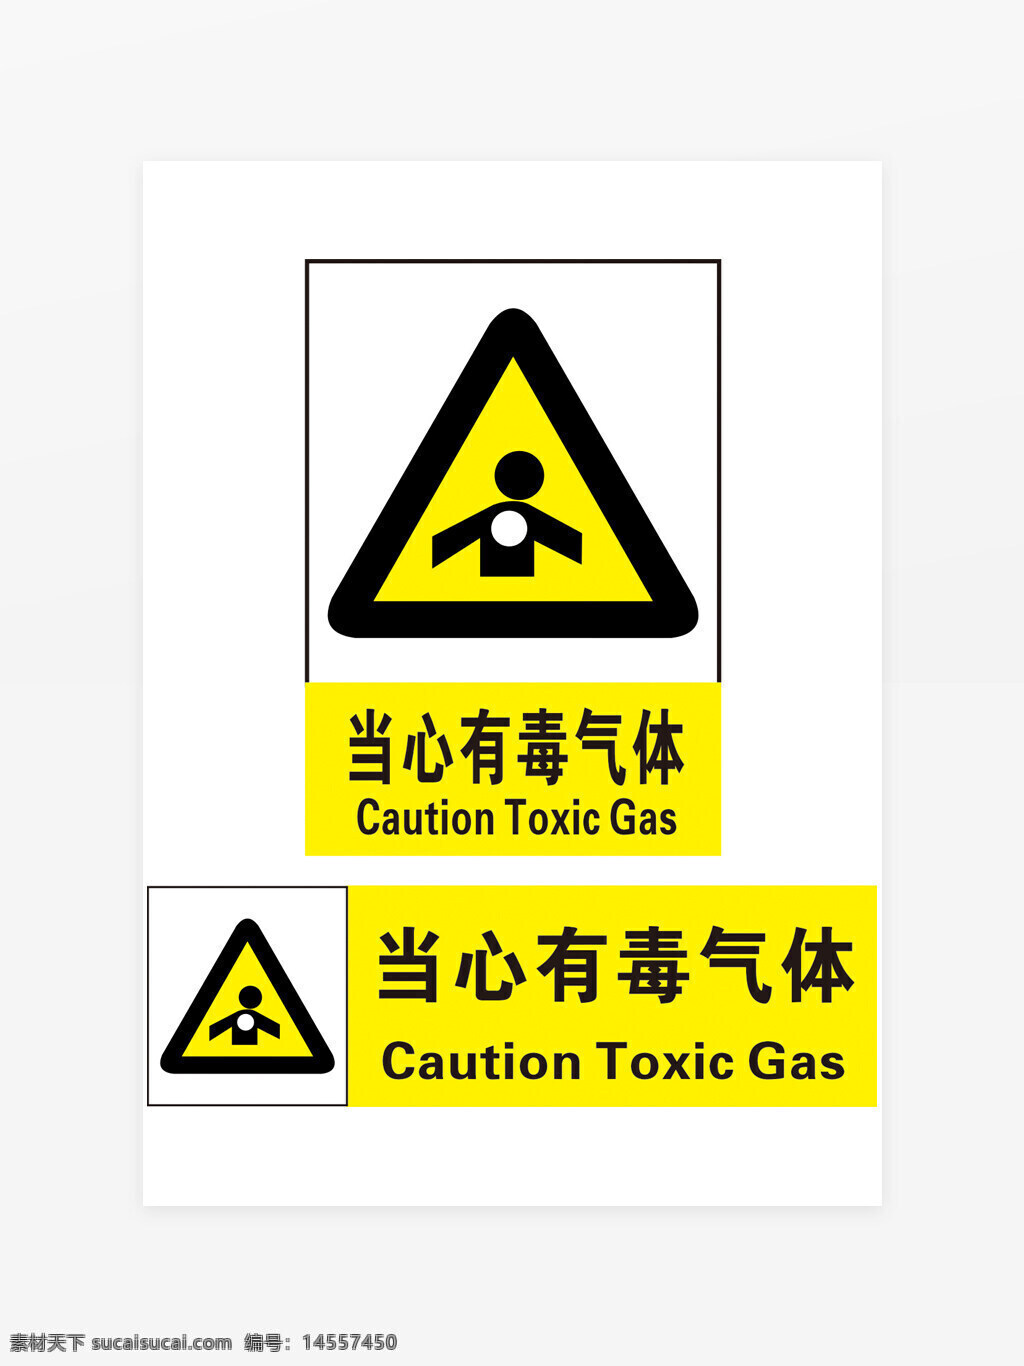 当心有毒气体 小心有毒气体 小心气体 当心气体 有毒气体标志 有毒气体提示 有毒气体